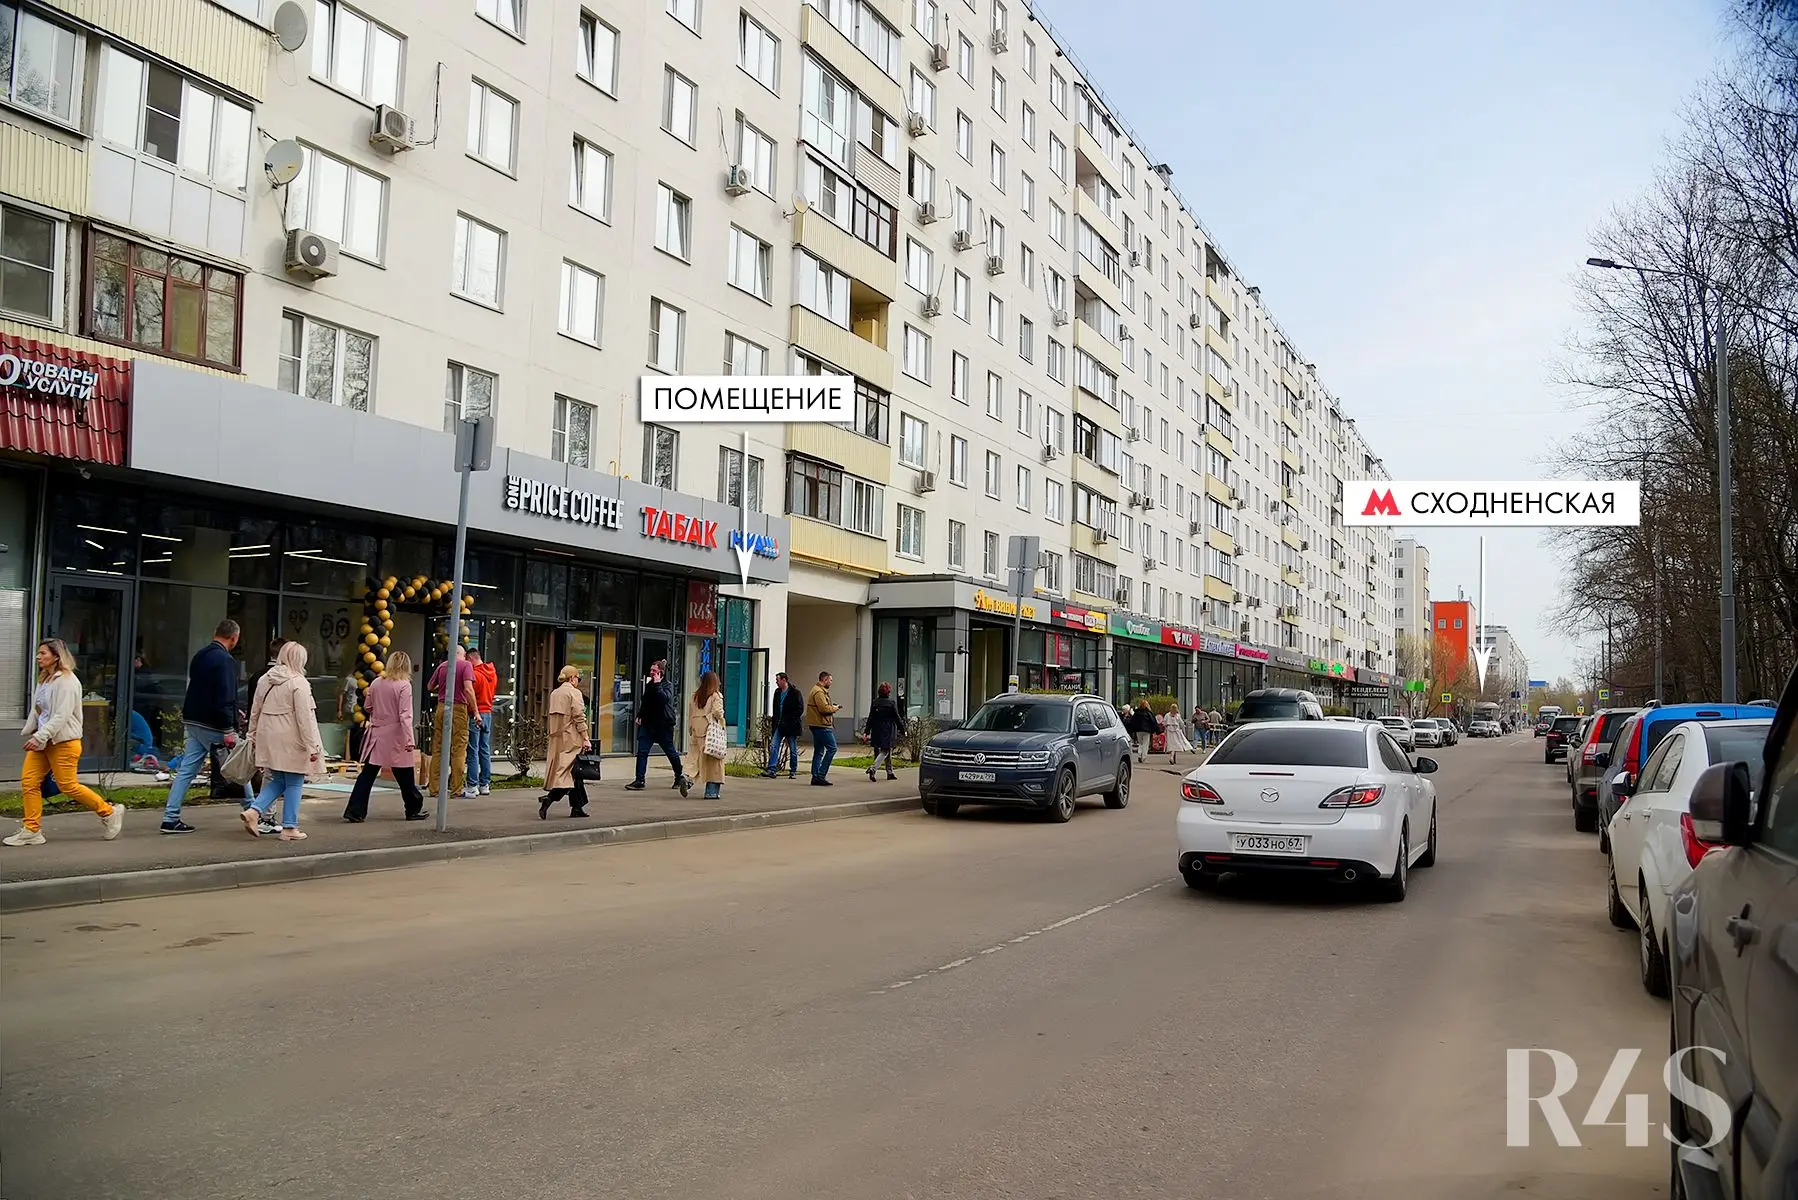 Продажа готового арендного бизнеса площадью 35 м2 в Москве: бульвар Яна Райниса, 2к1 R4S | Realty4Sale